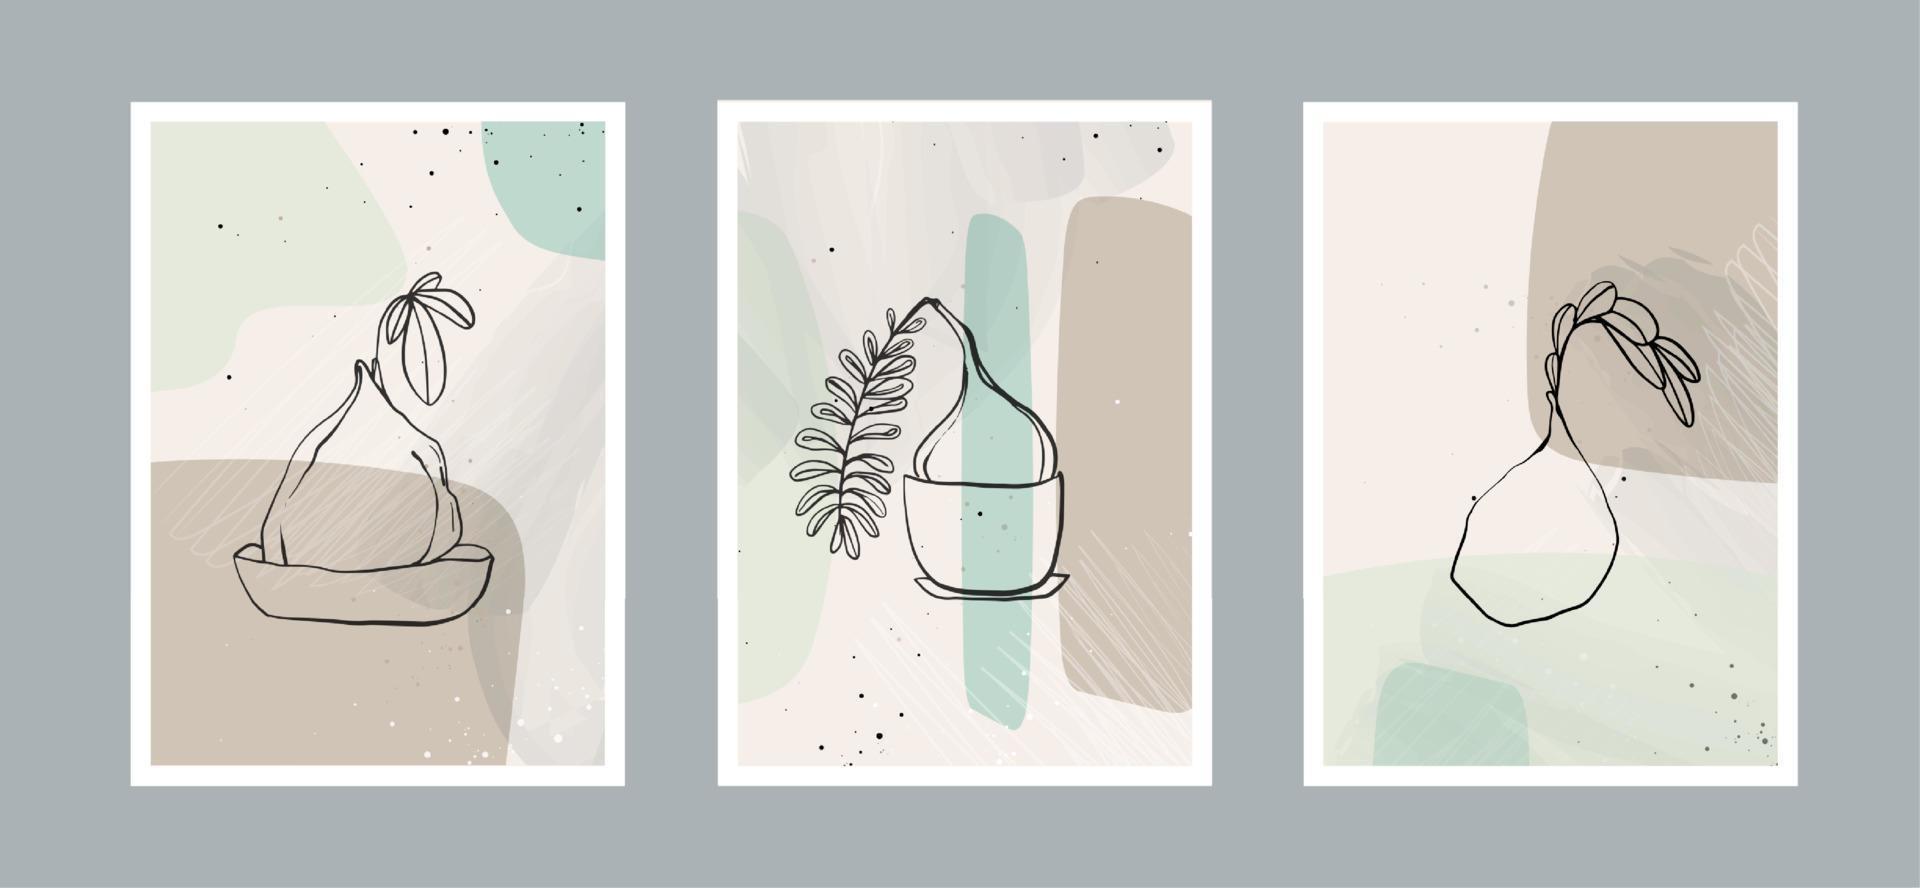 modern abstrakt löv linjekonstbakgrund med olika former för väggdekoration, vykort eller broschyromslagsdesign. vektor design